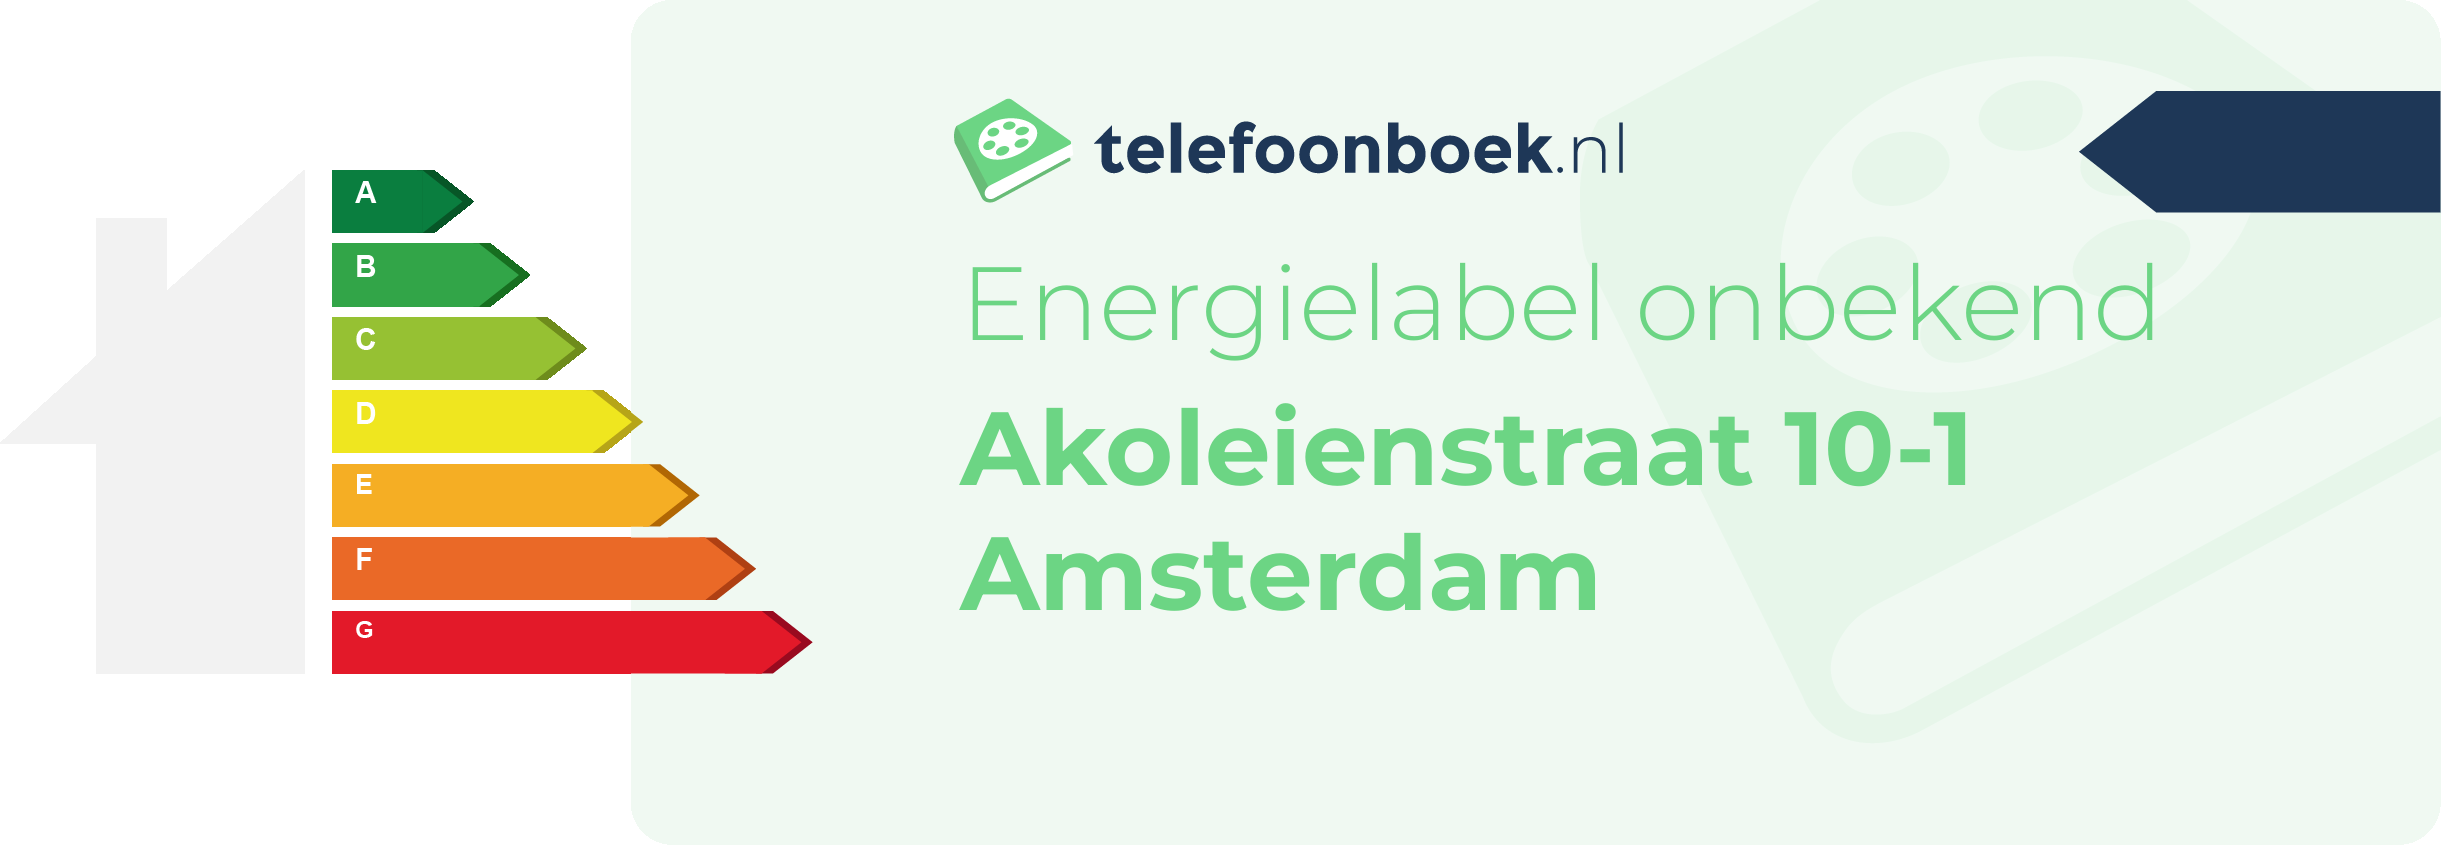 Energielabel Akoleienstraat 10-1 Amsterdam